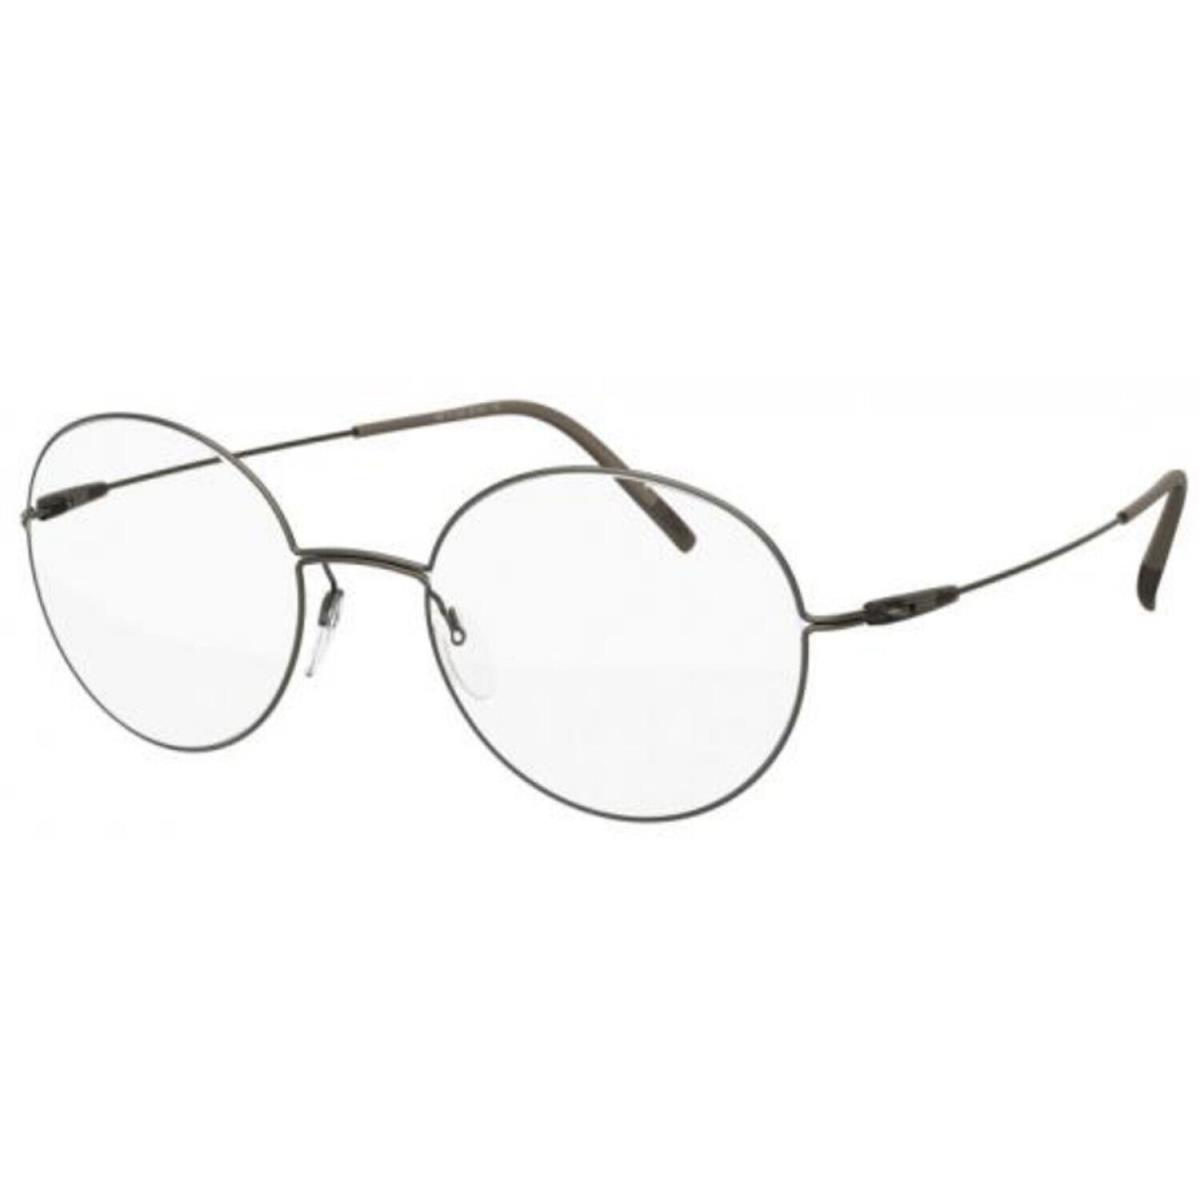 Silhouette Eyeglasses Dynamics Colorwave 49-19-140 Simply Brown 5509-6040-49mm